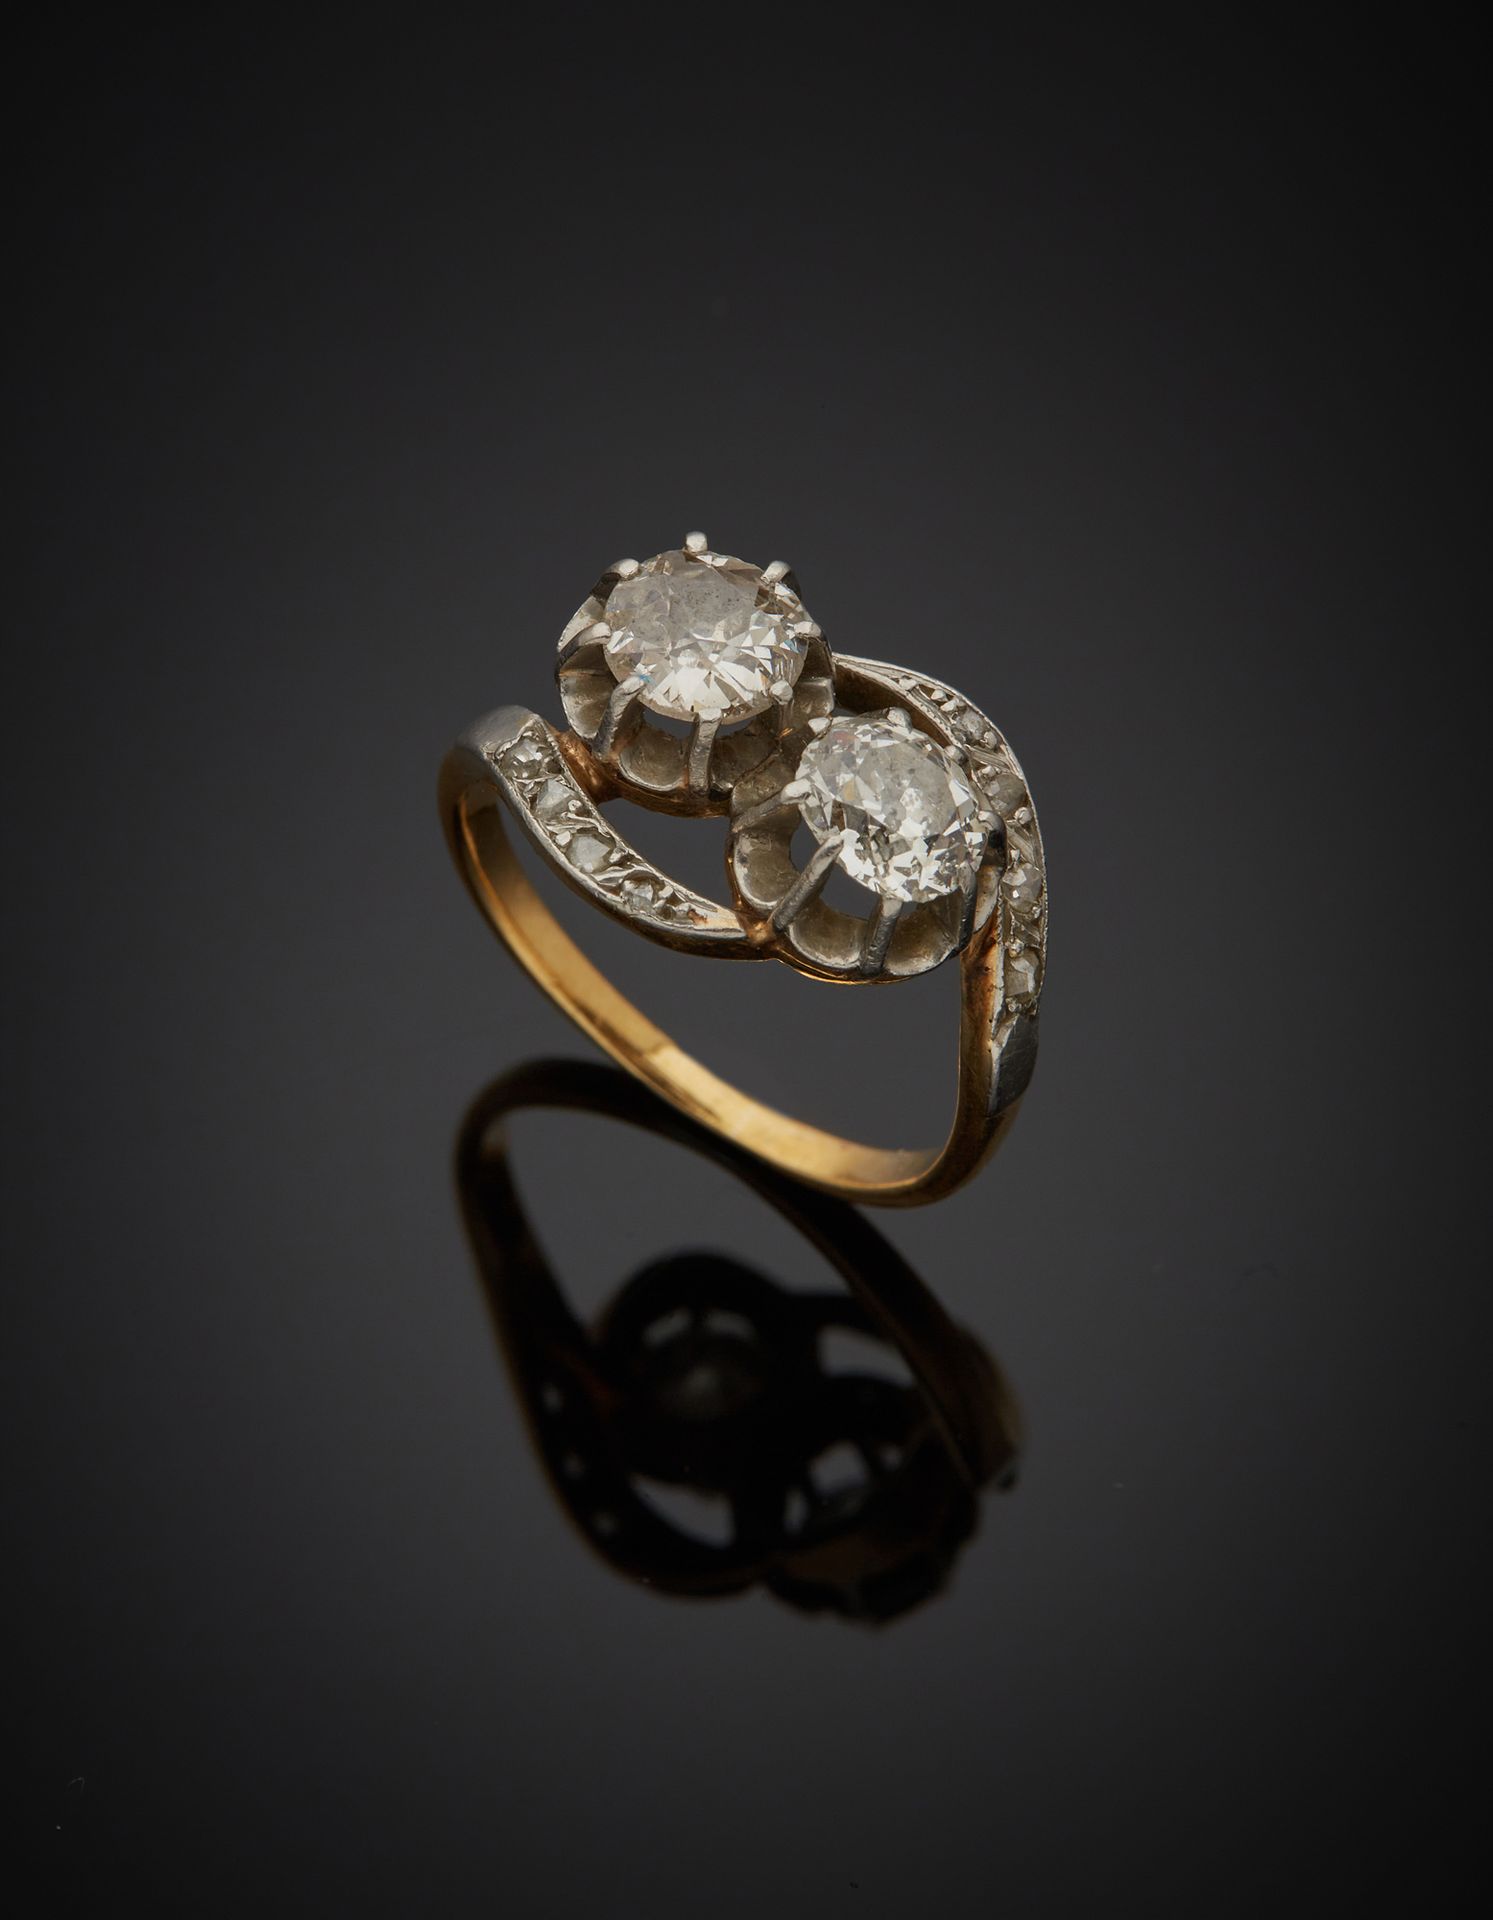 Null 一枚18K黄金750‰和铂金850‰的十字架戒指，镶嵌着两颗老式切割钻石，肩部是两行玫瑰切割钻石。石头是有种子的。

手指尺寸52 毛重3.90克